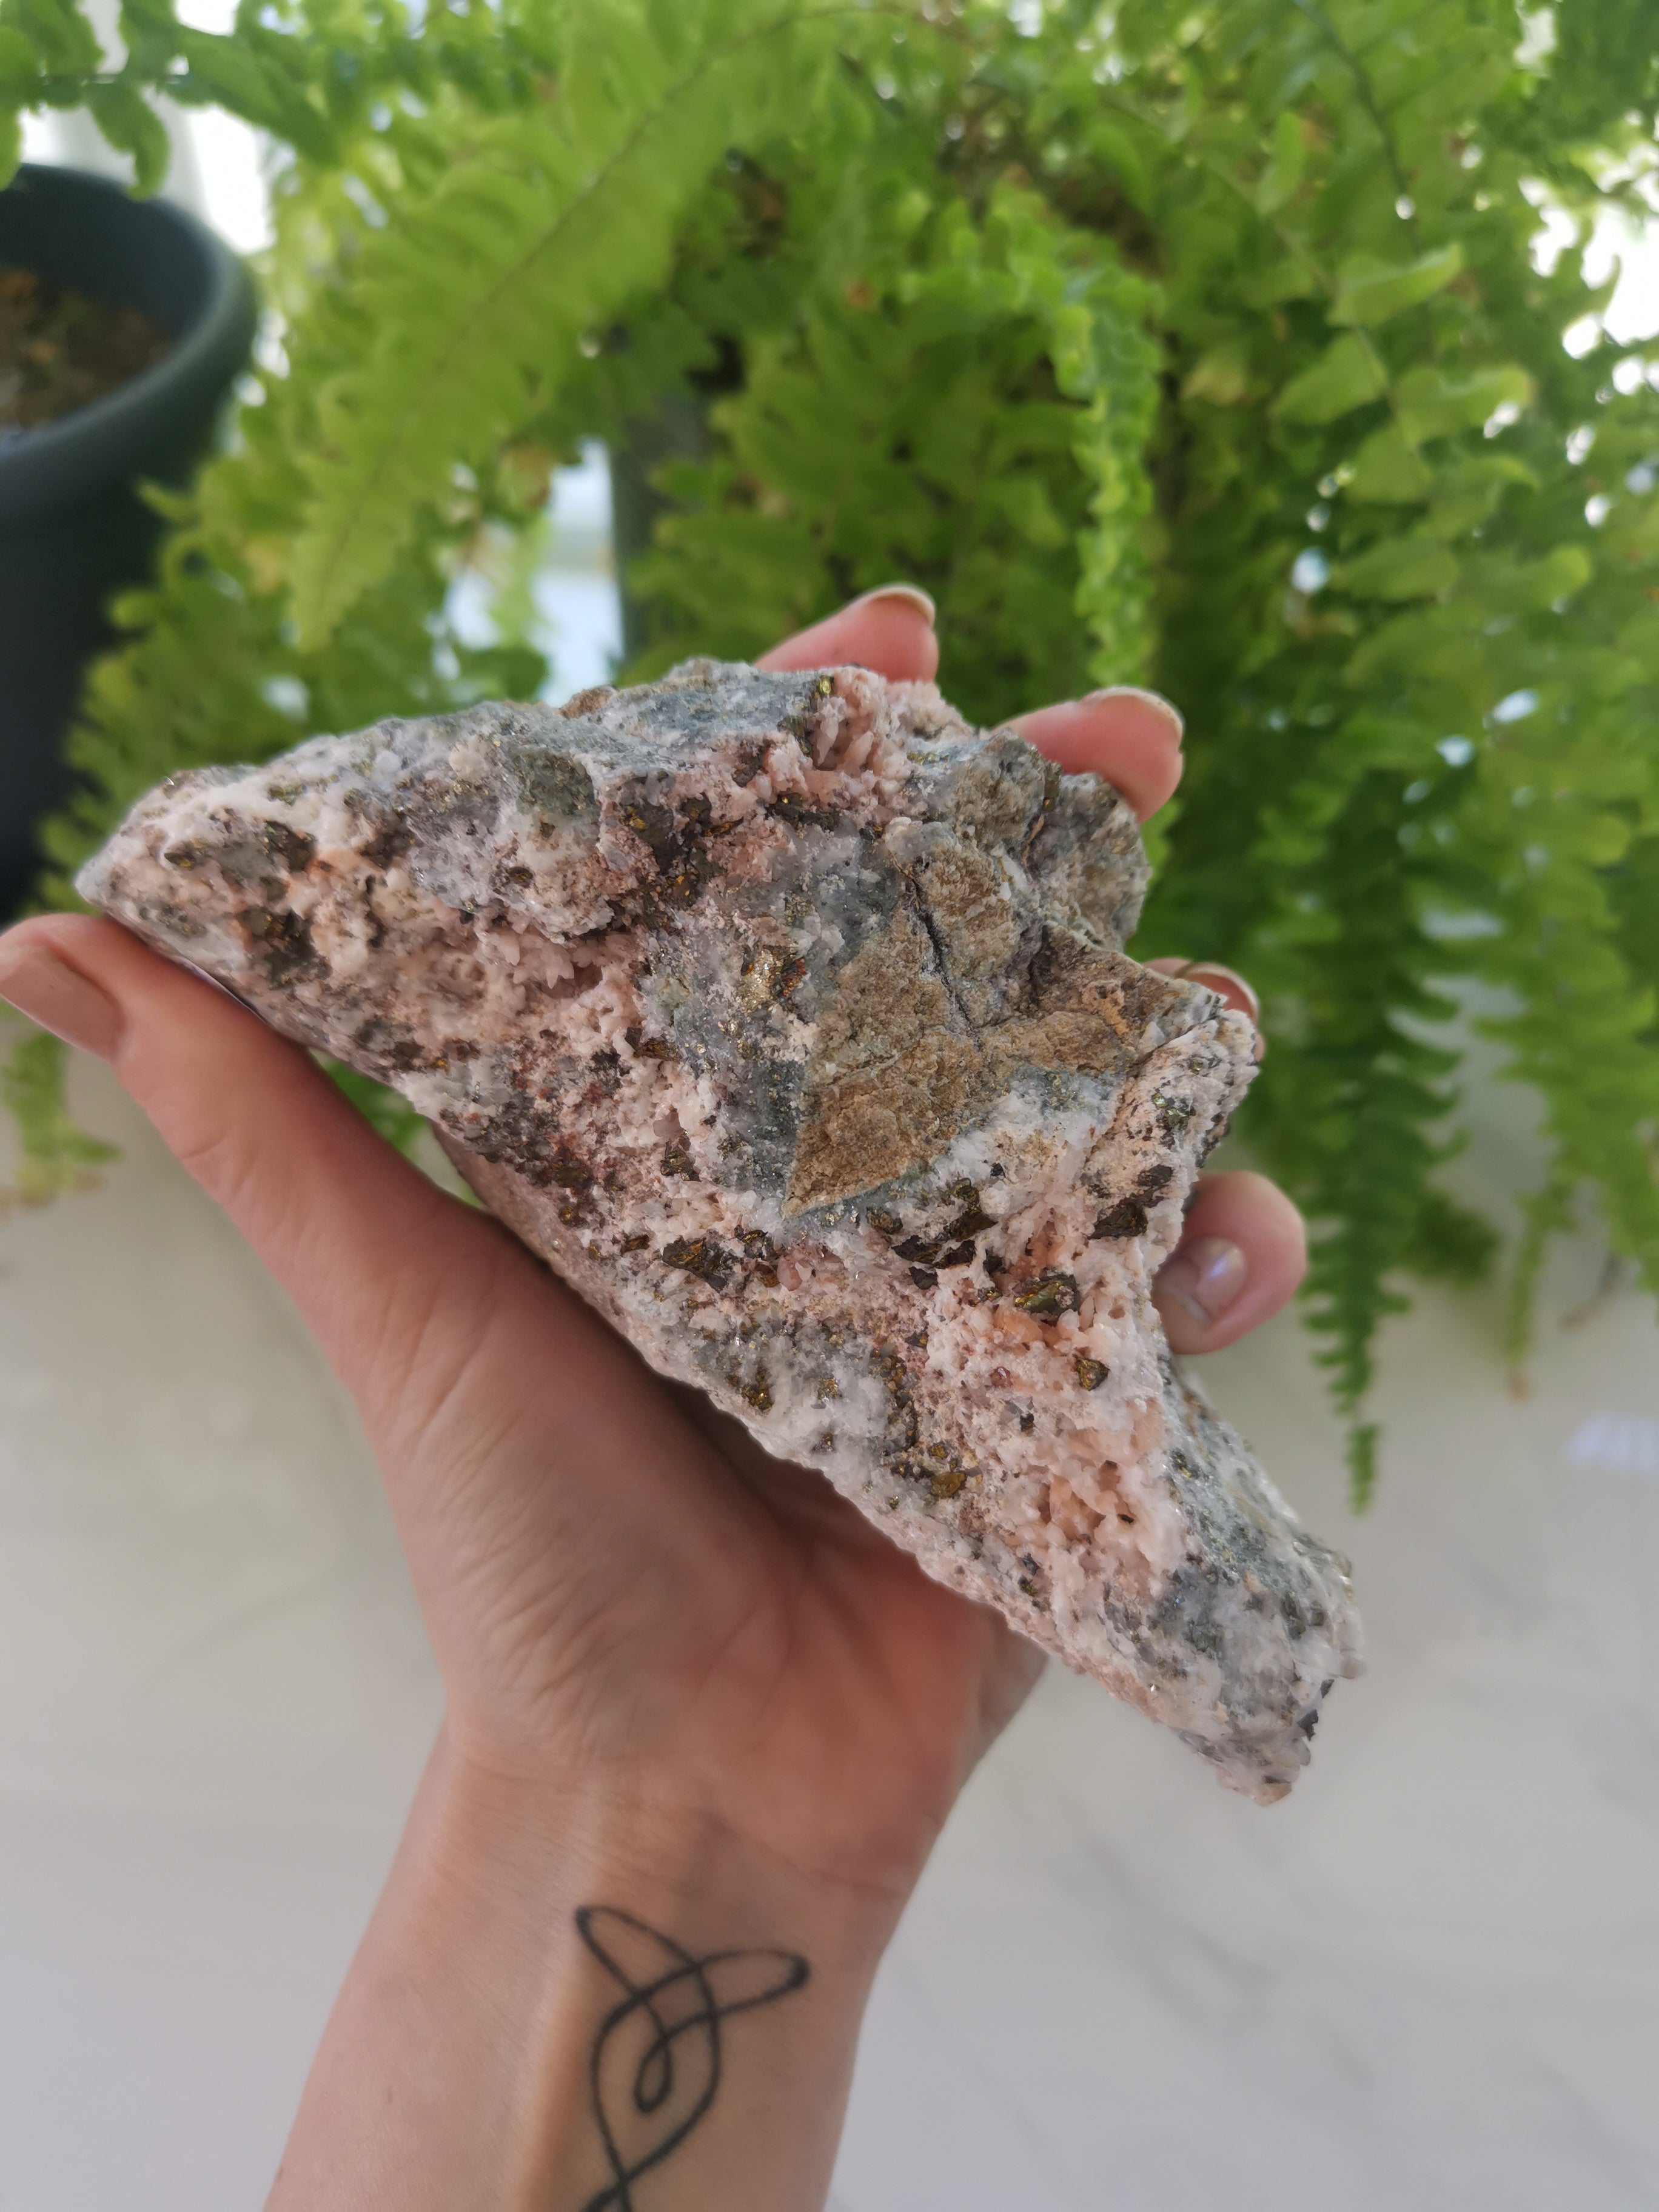 Quartz, Calcite, Galena and Pyrite Raw Specimen